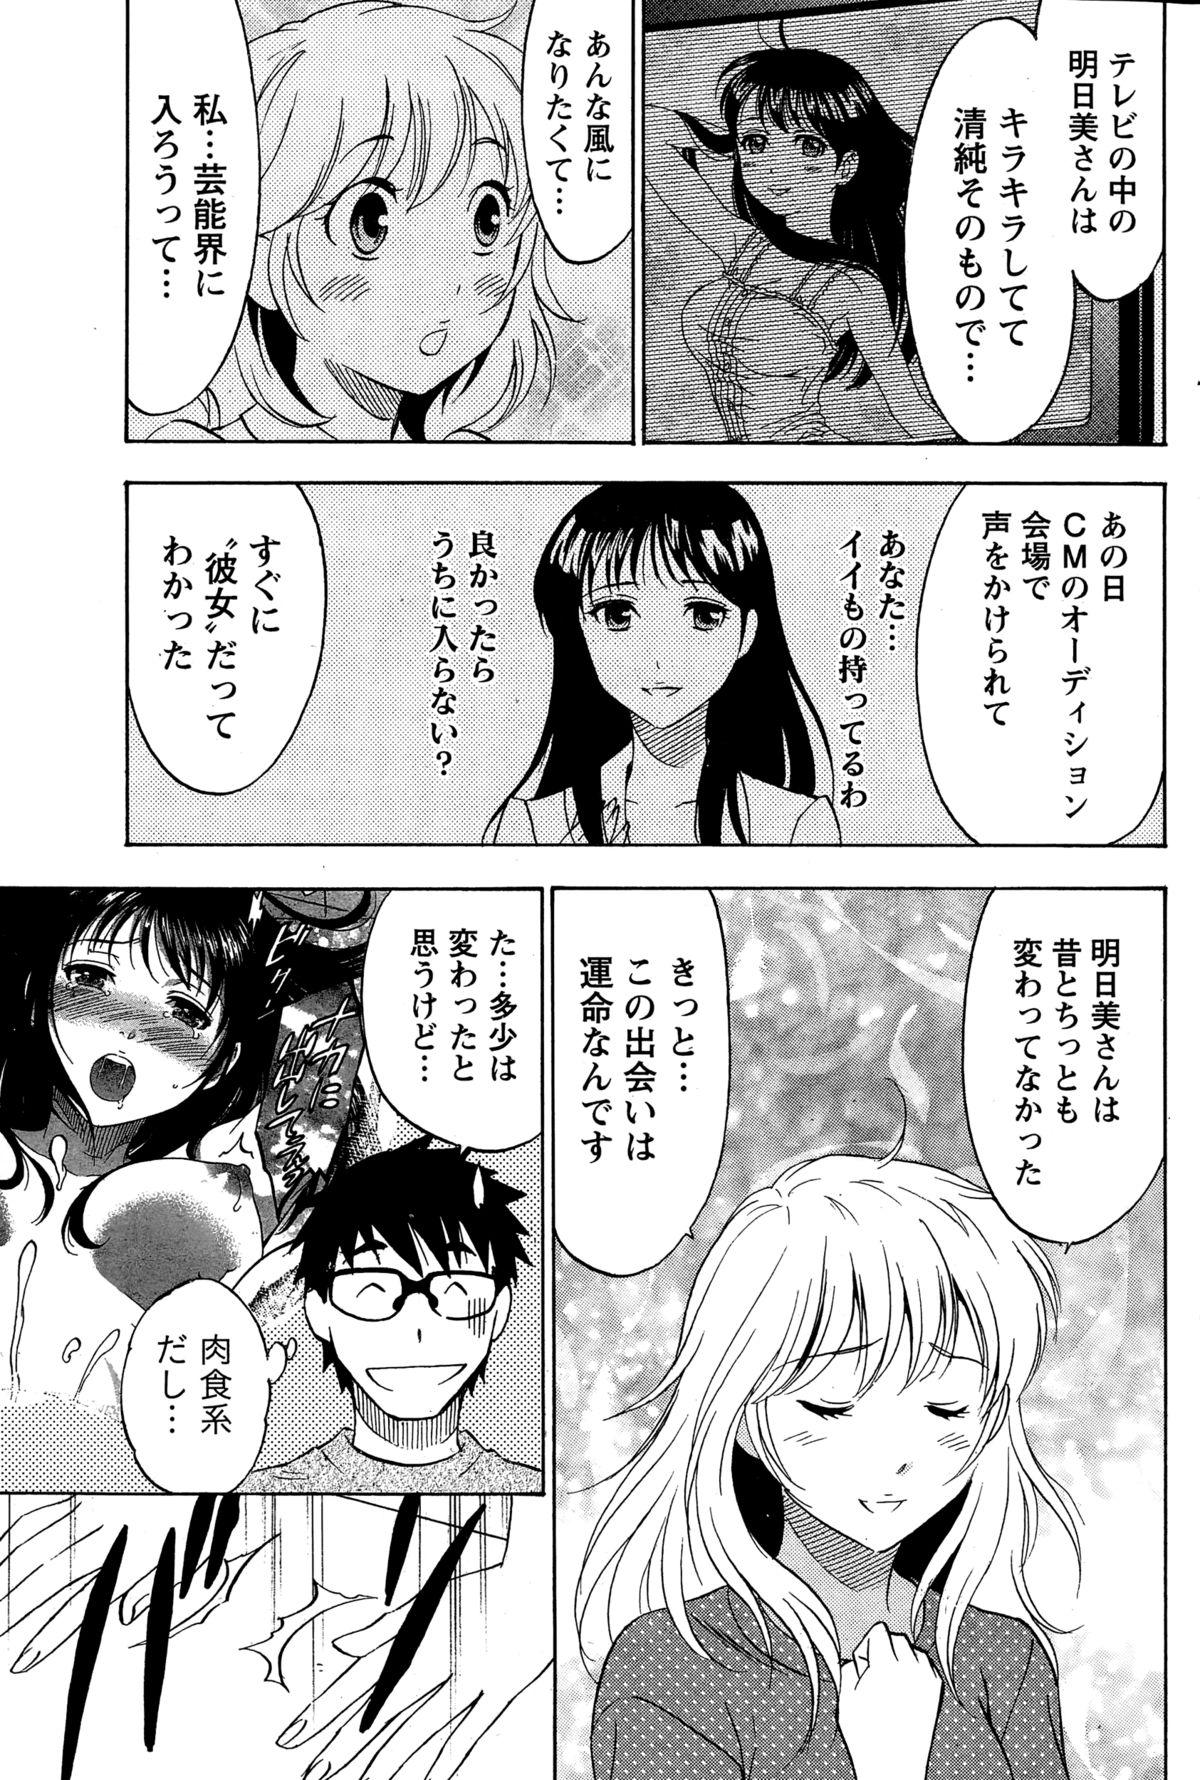 [Sawada Furope] Nise kon! - Spectacular Happy Sham Marriage! Ch.1-6 115